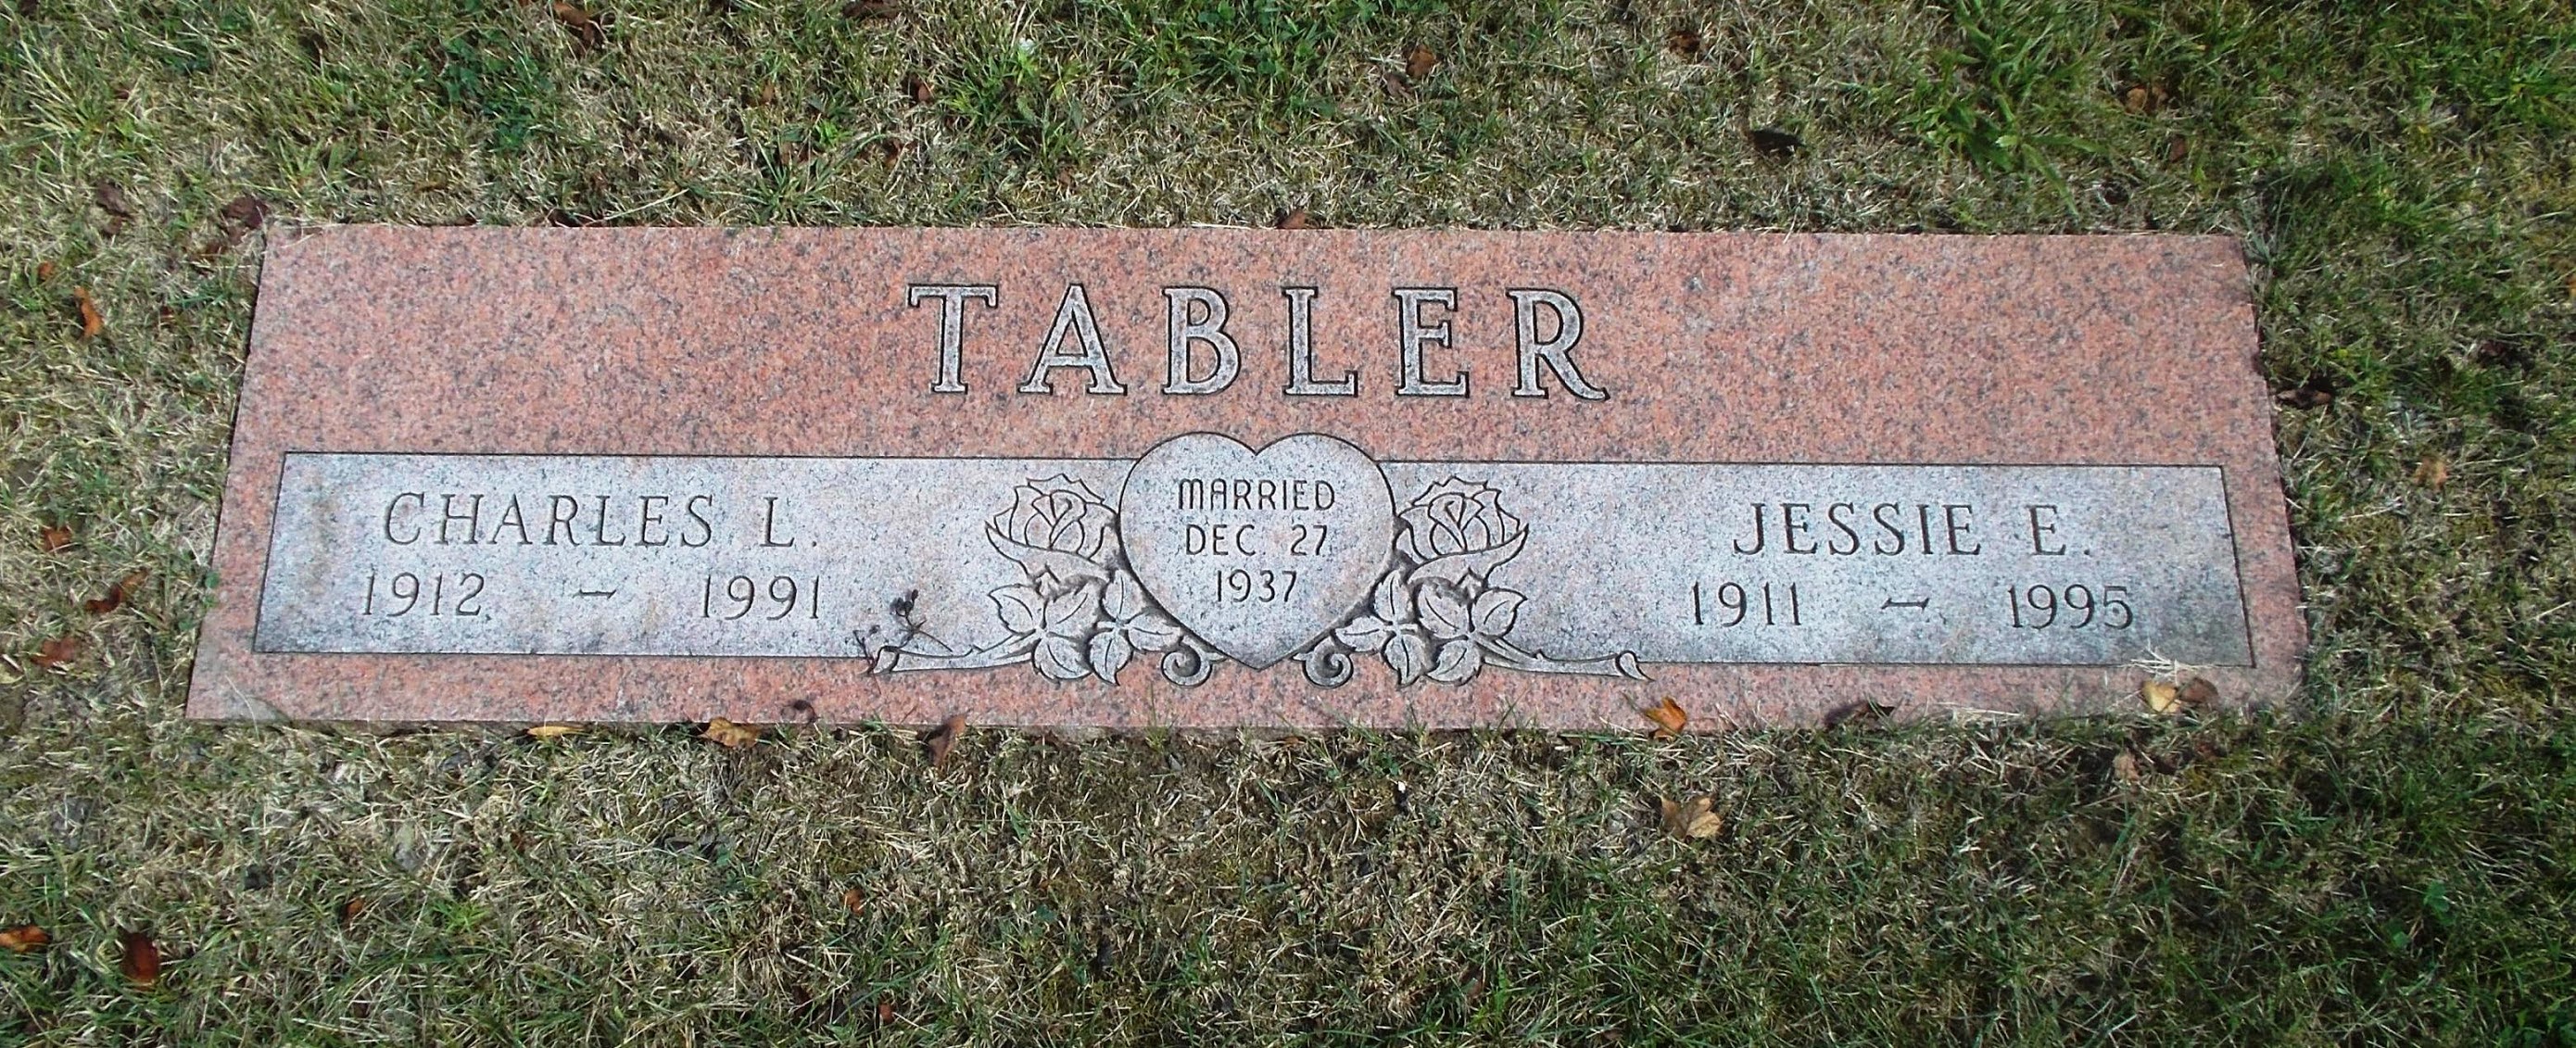 Charles L Tabler